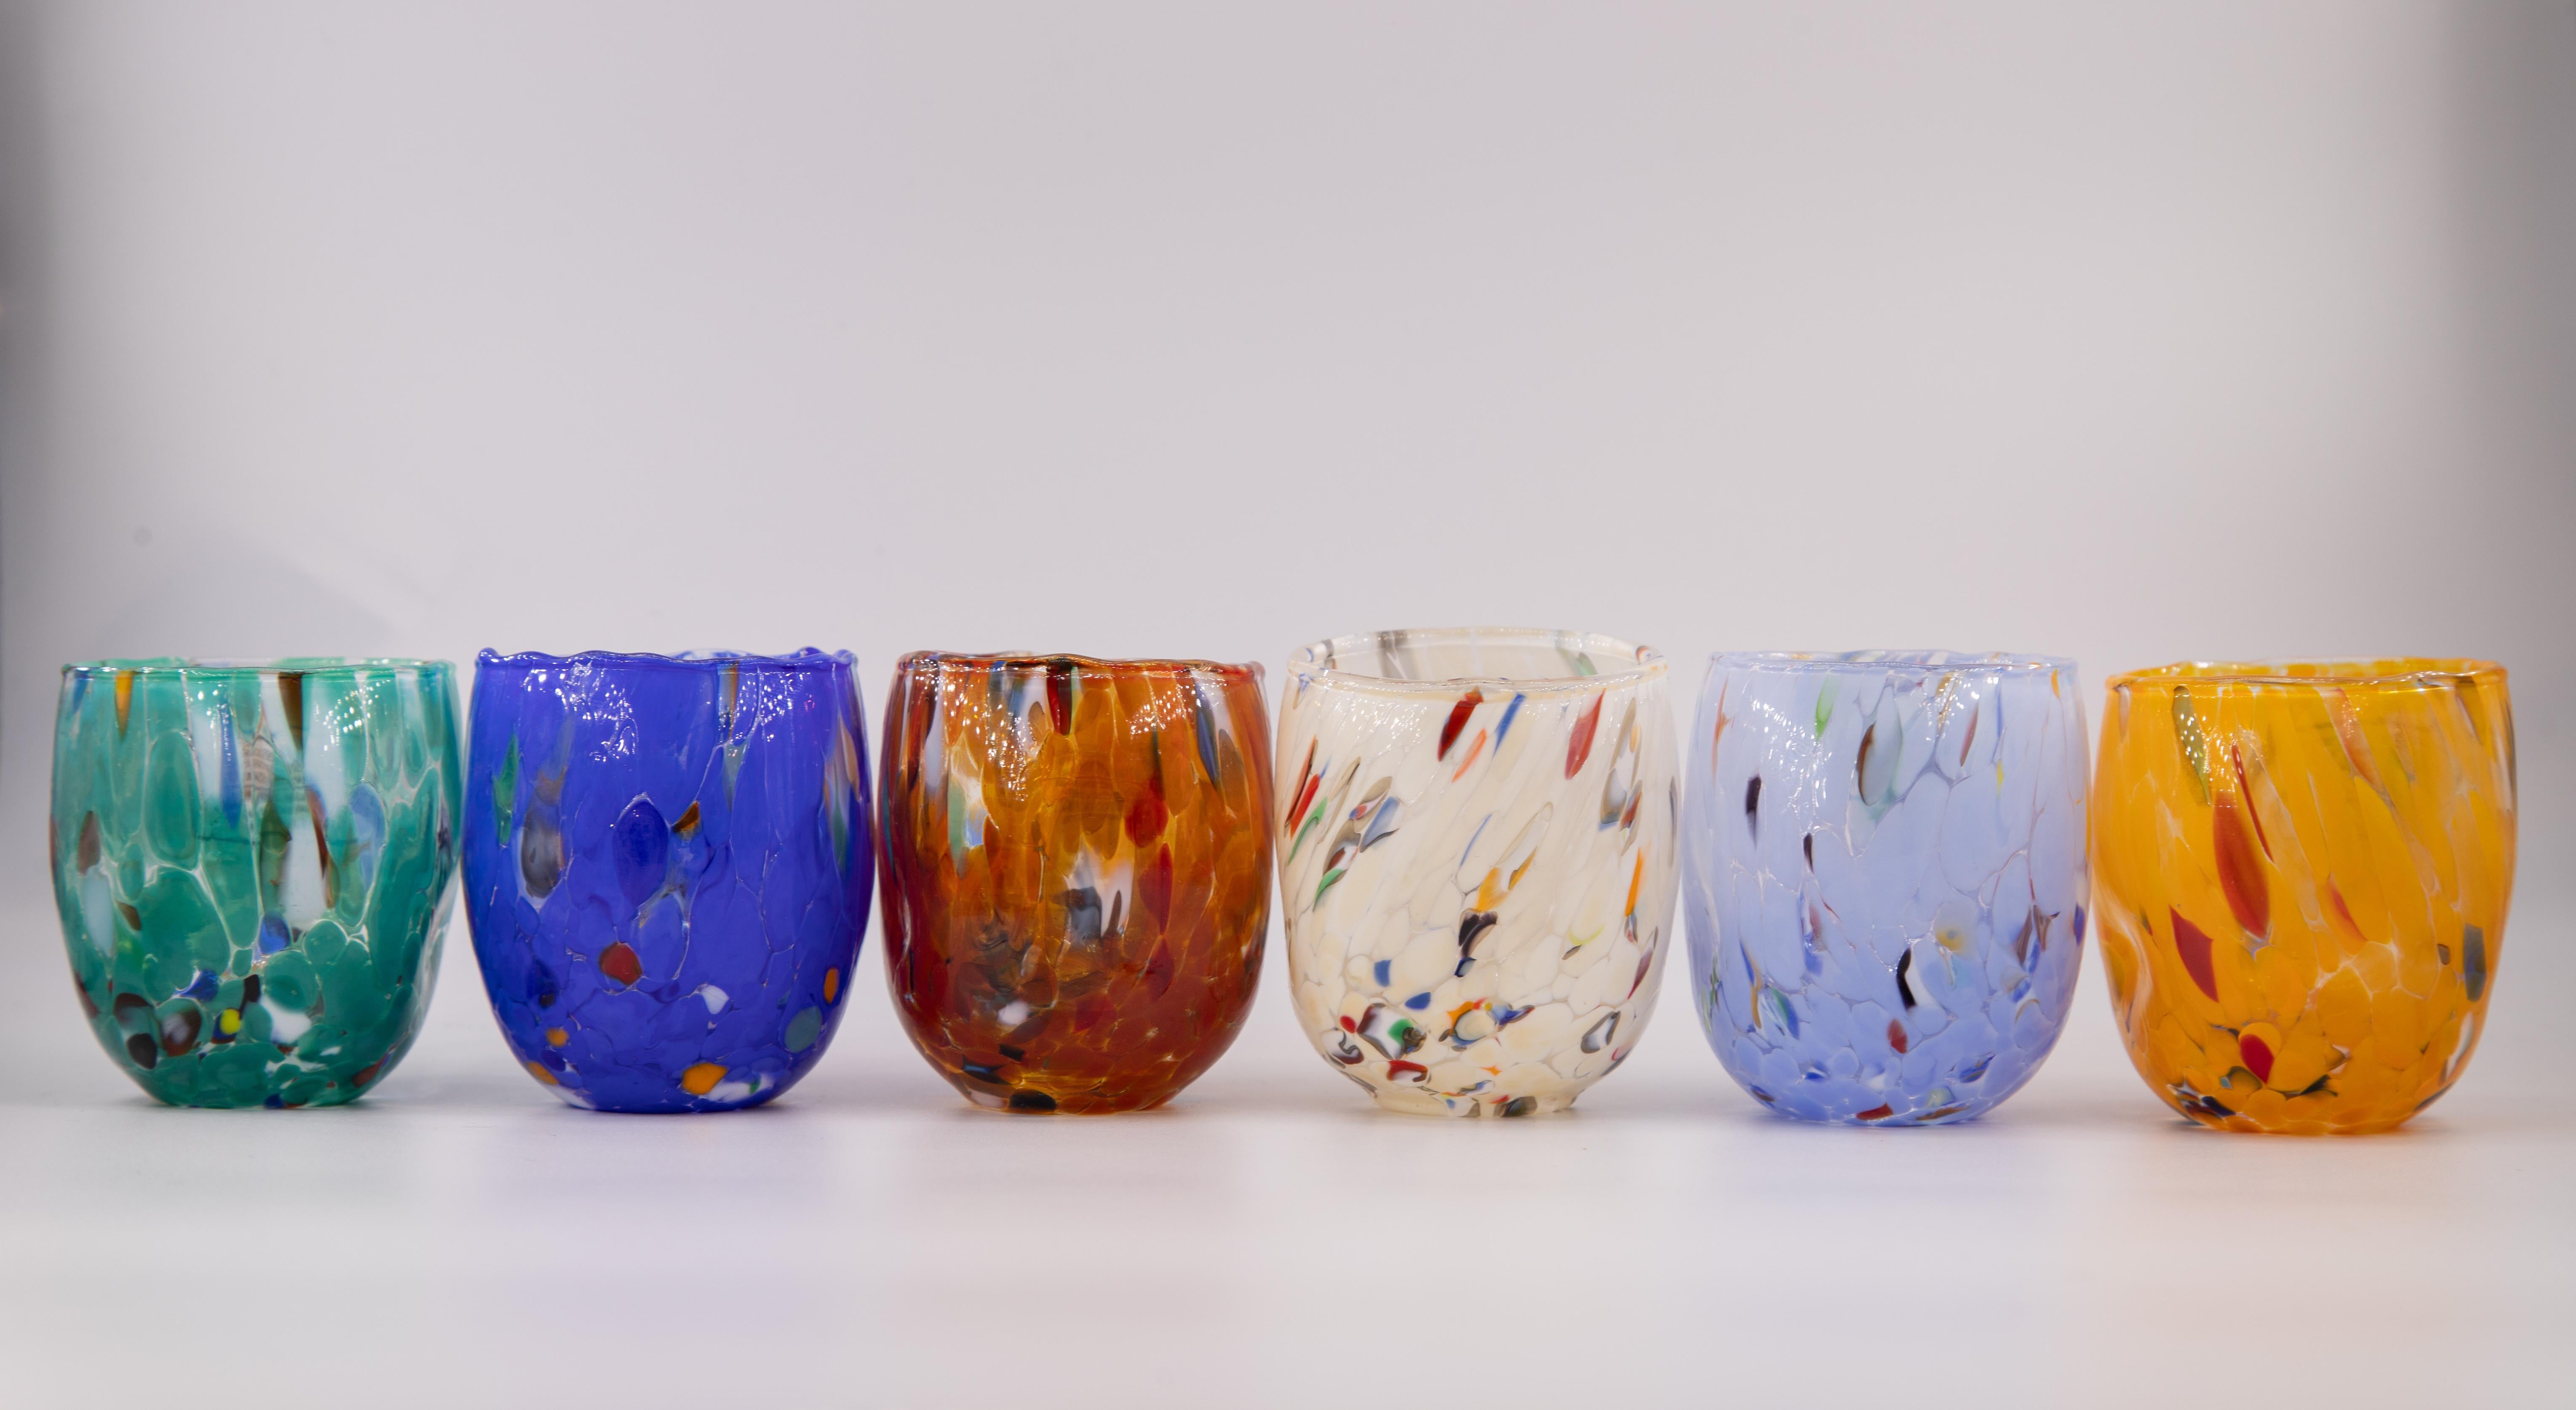 Set von sechs Shot\café Gläser Farbe Multicolor (petrol grün, blau, rot, elfenbein, periwinkle, Senf) - Murano Glas - Made in Italy.

Diese individuellen Murano-Gläser sind von dem klassischen Murano-Glas 